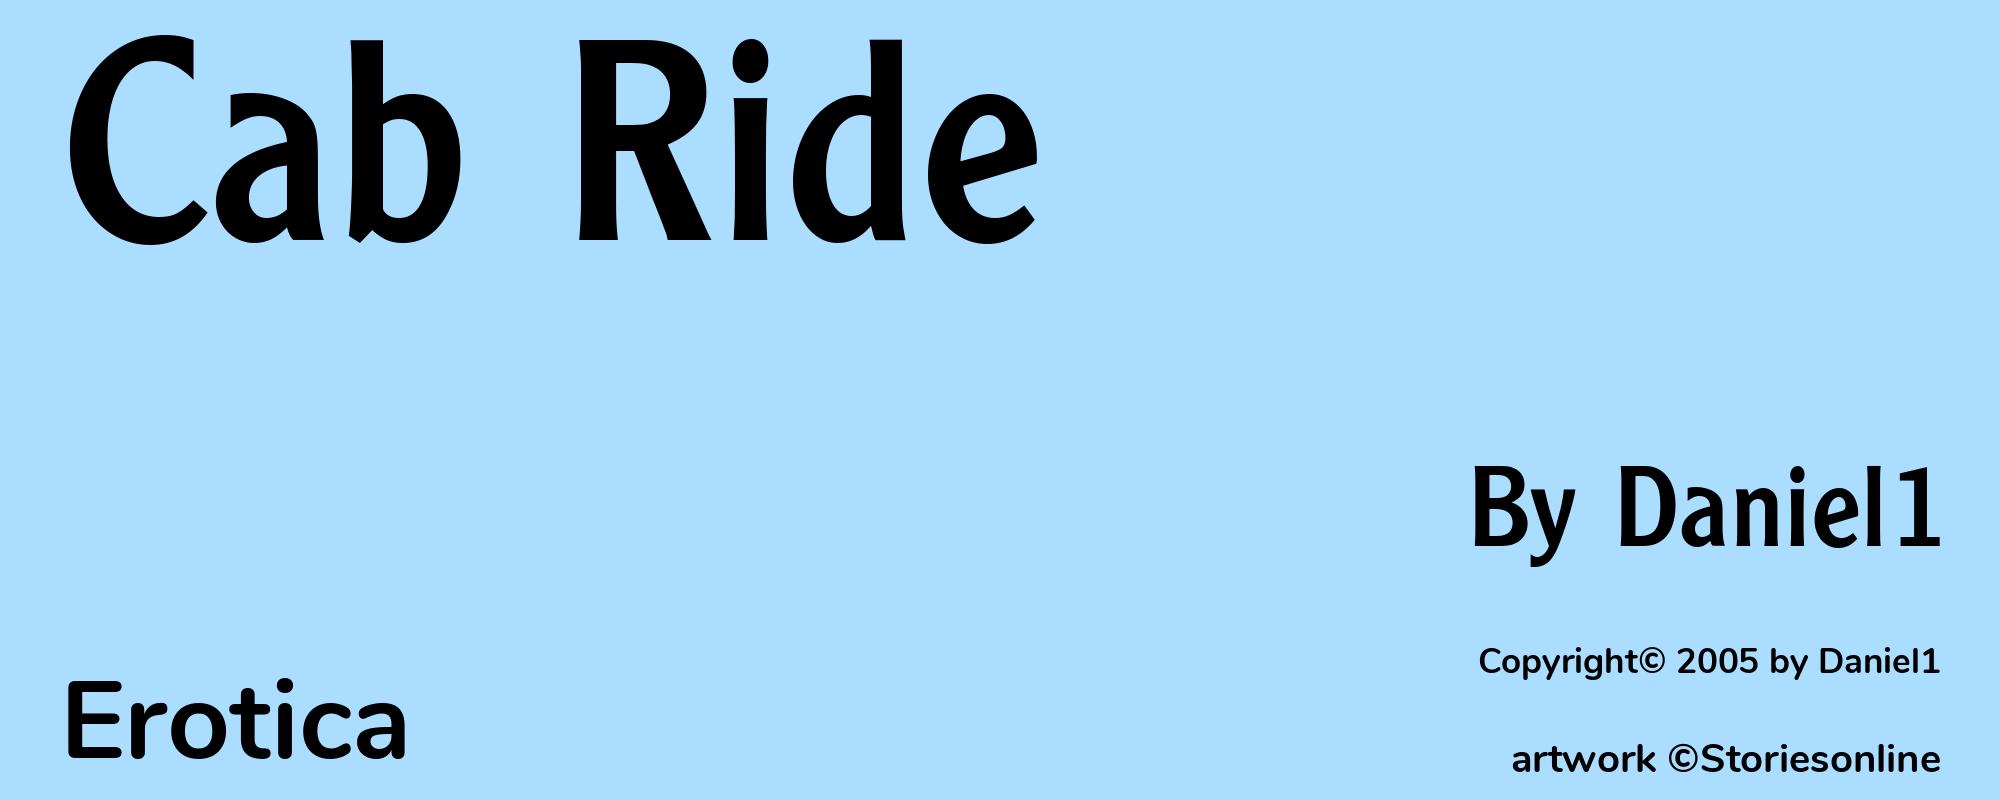 Cab Ride - Cover